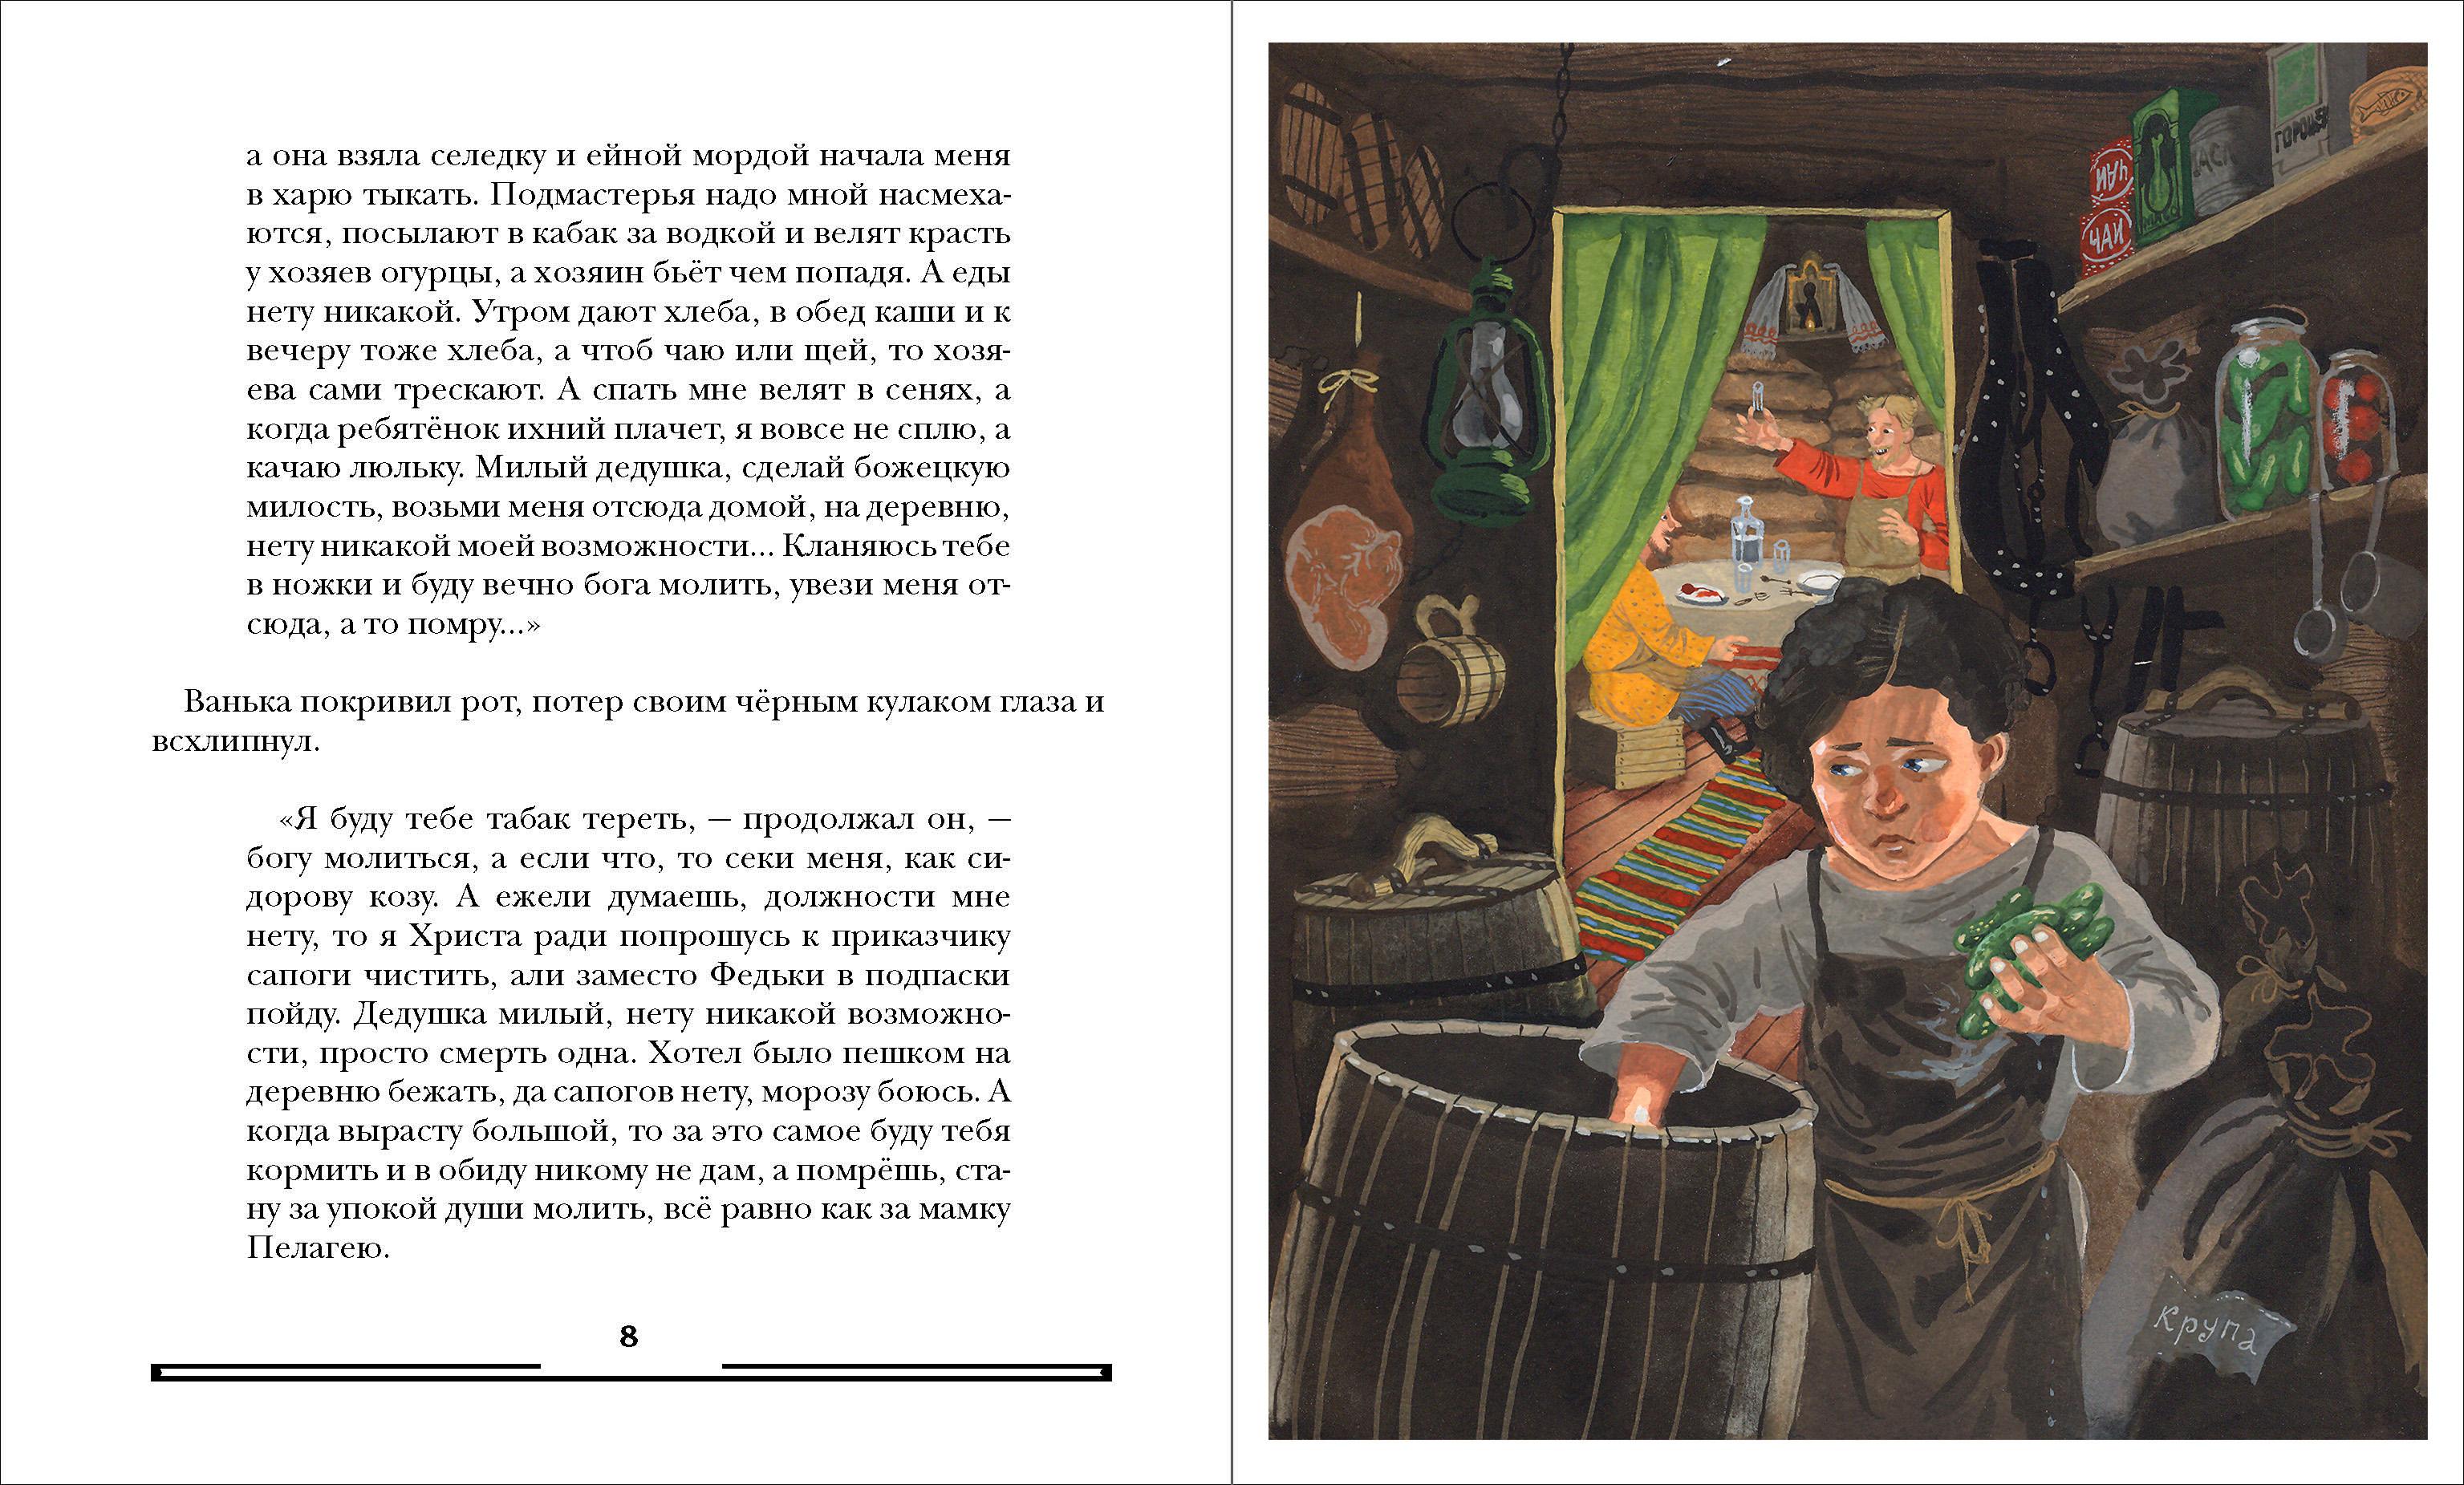 Иллюстрации к рассказу чехова ванька